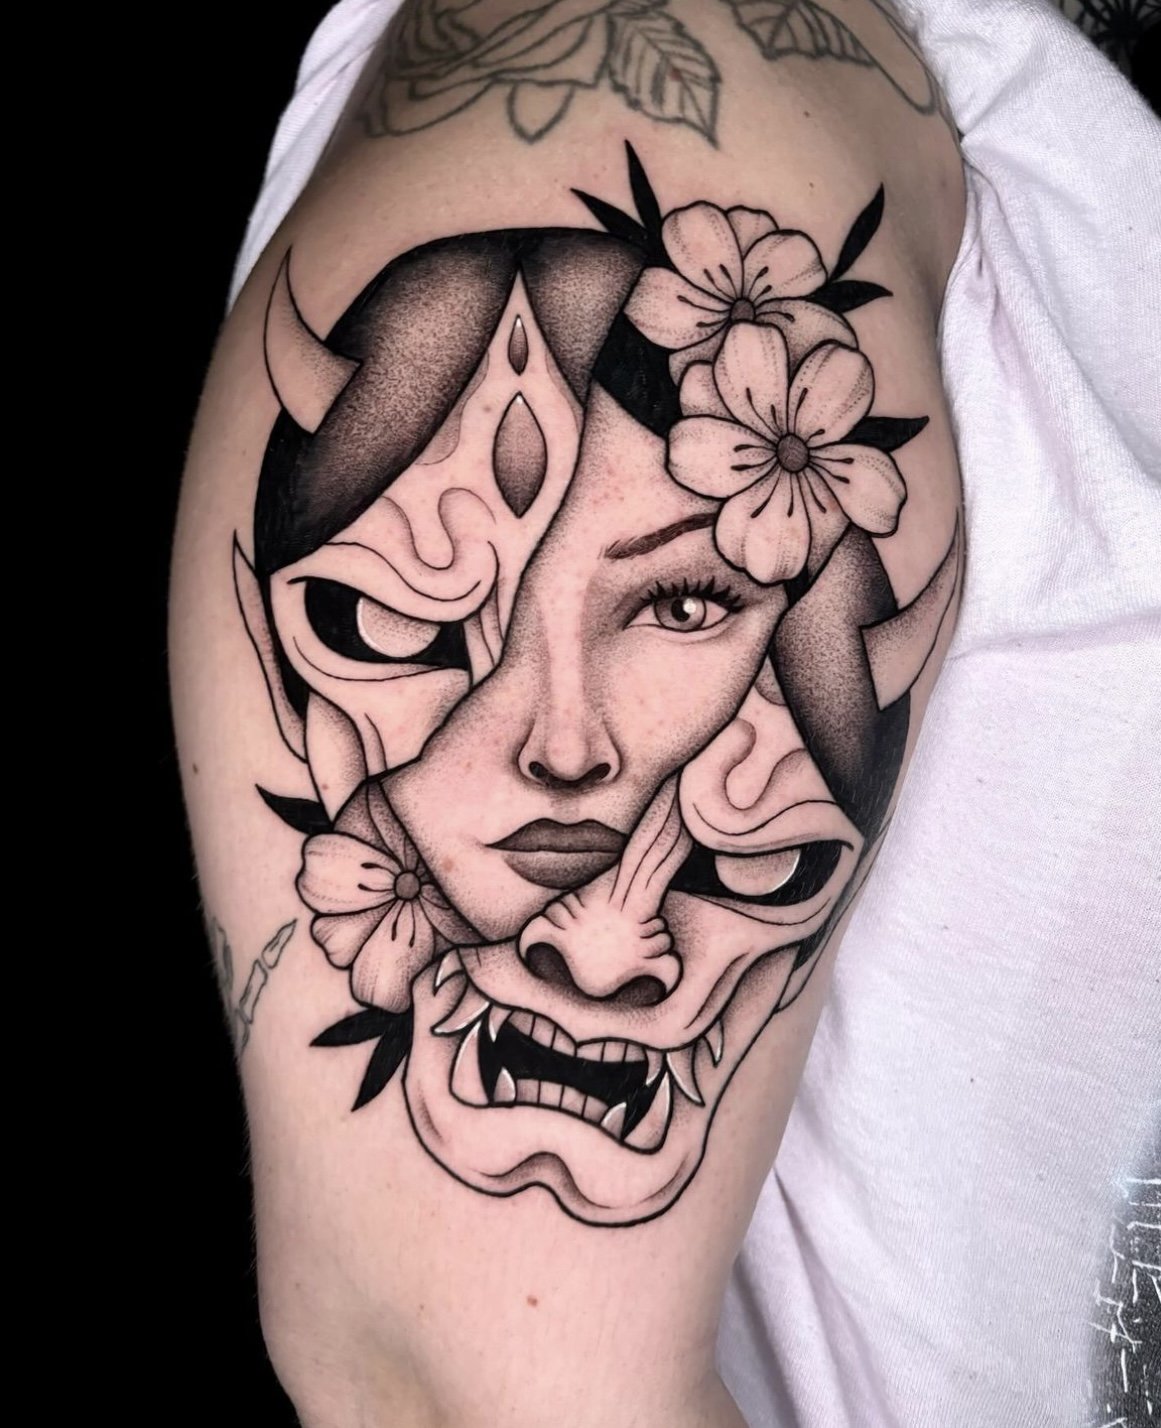 Tattoo uploaded by Sarah Kjus • #phoenix #mask #woman #tattoo • Tattoodo